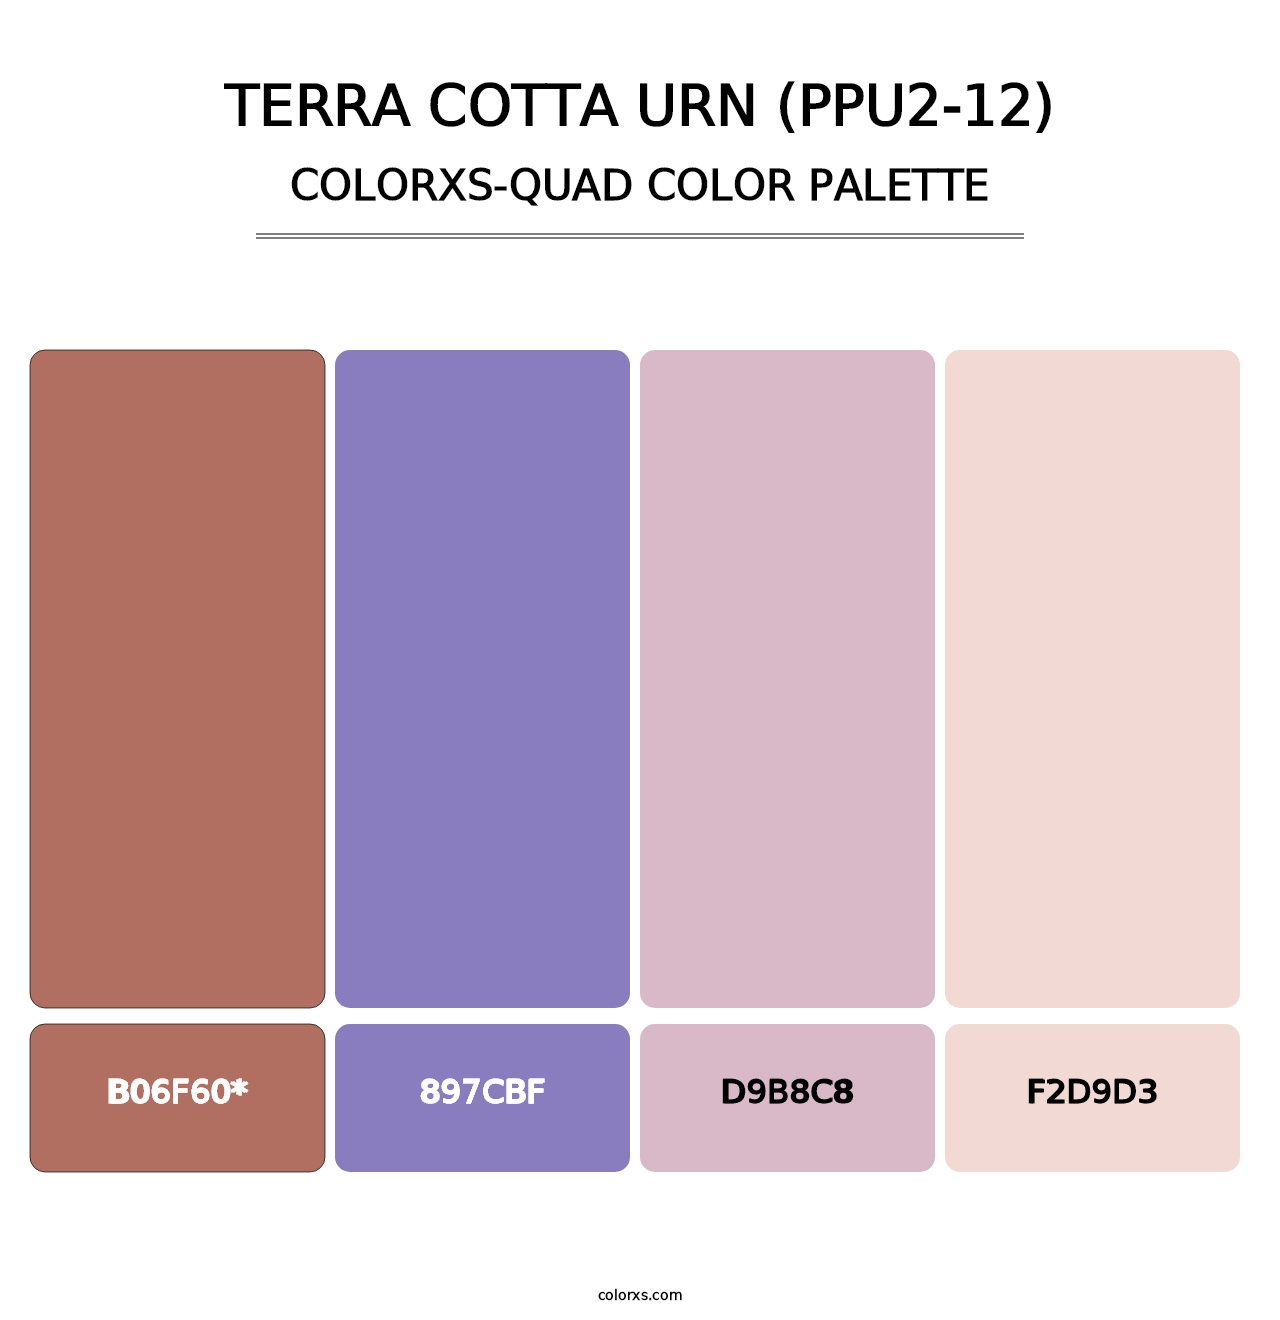 Terra Cotta Urn (PPU2-12) - Colorxs Quad Palette